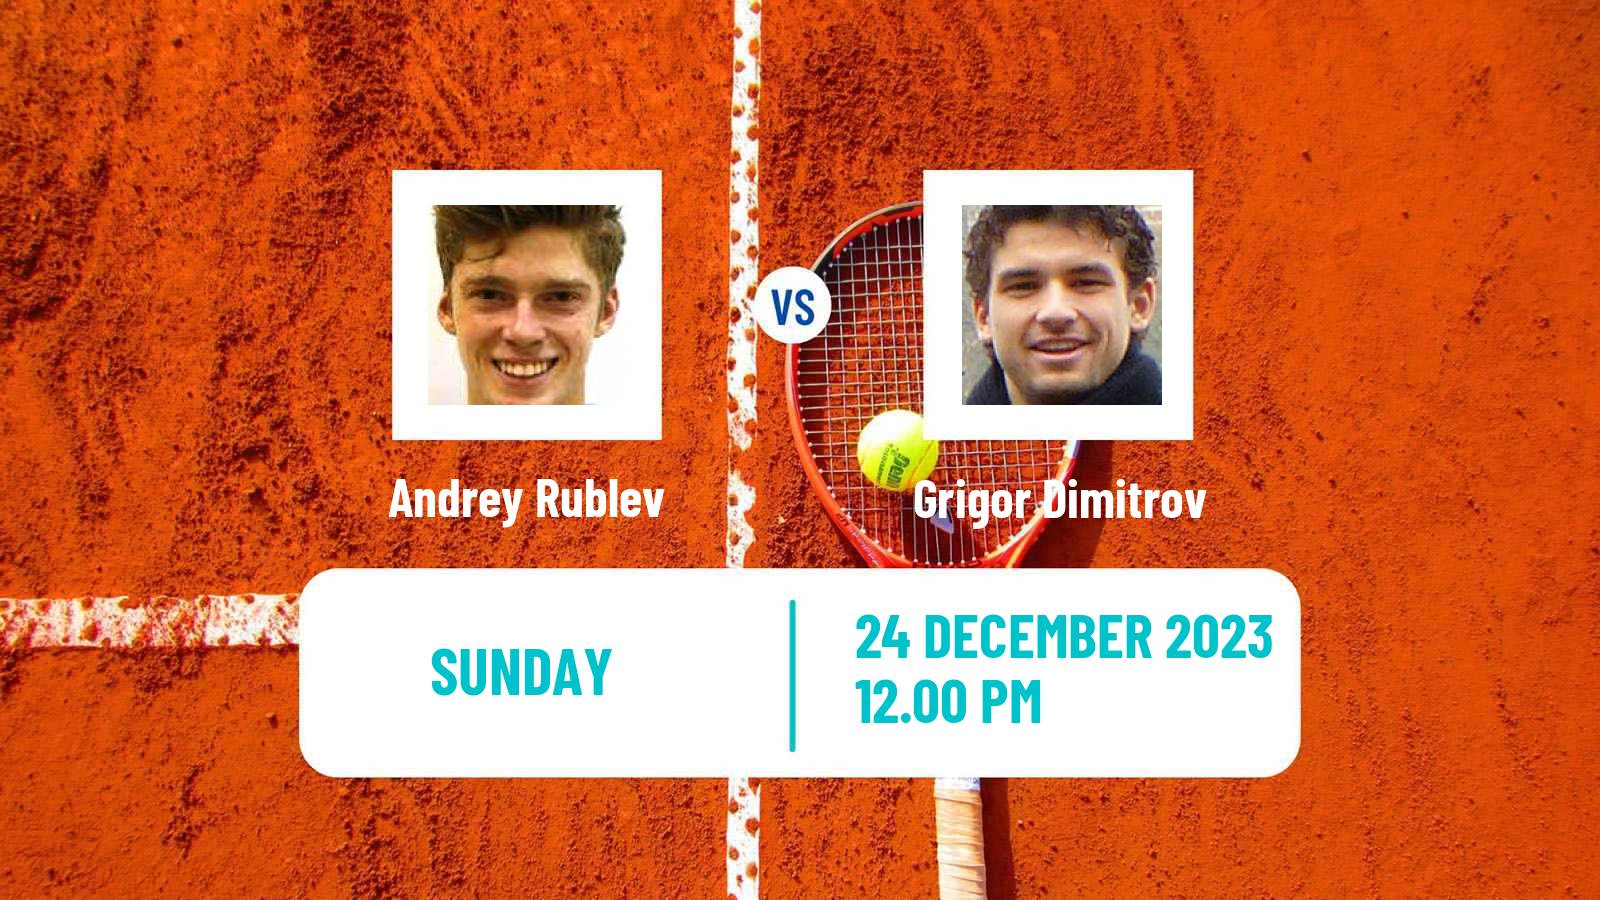 Tennis Exhibition World Tennis League Andrey Rublev - Grigor Dimitrov